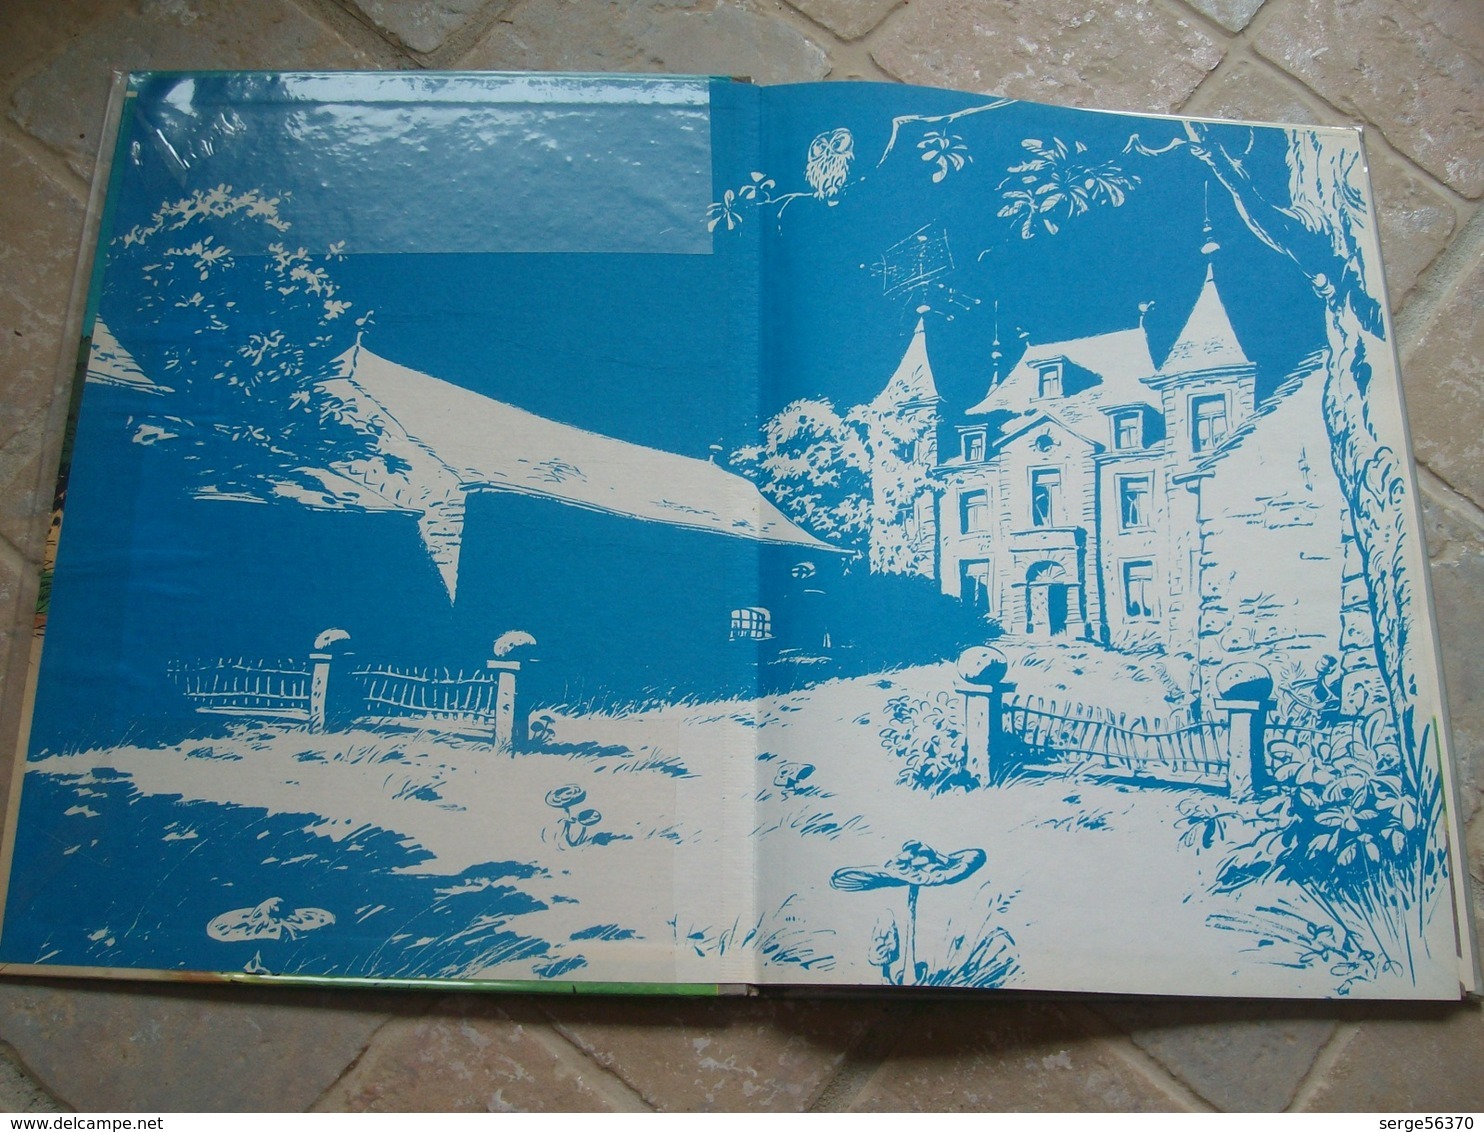 Spirou Et Fantasio 19 Panade à Champignac FRANQUIN Marsupilami édition De 1969 Titre En Bleu EO éo Première Originale - Spirou Et Fantasio